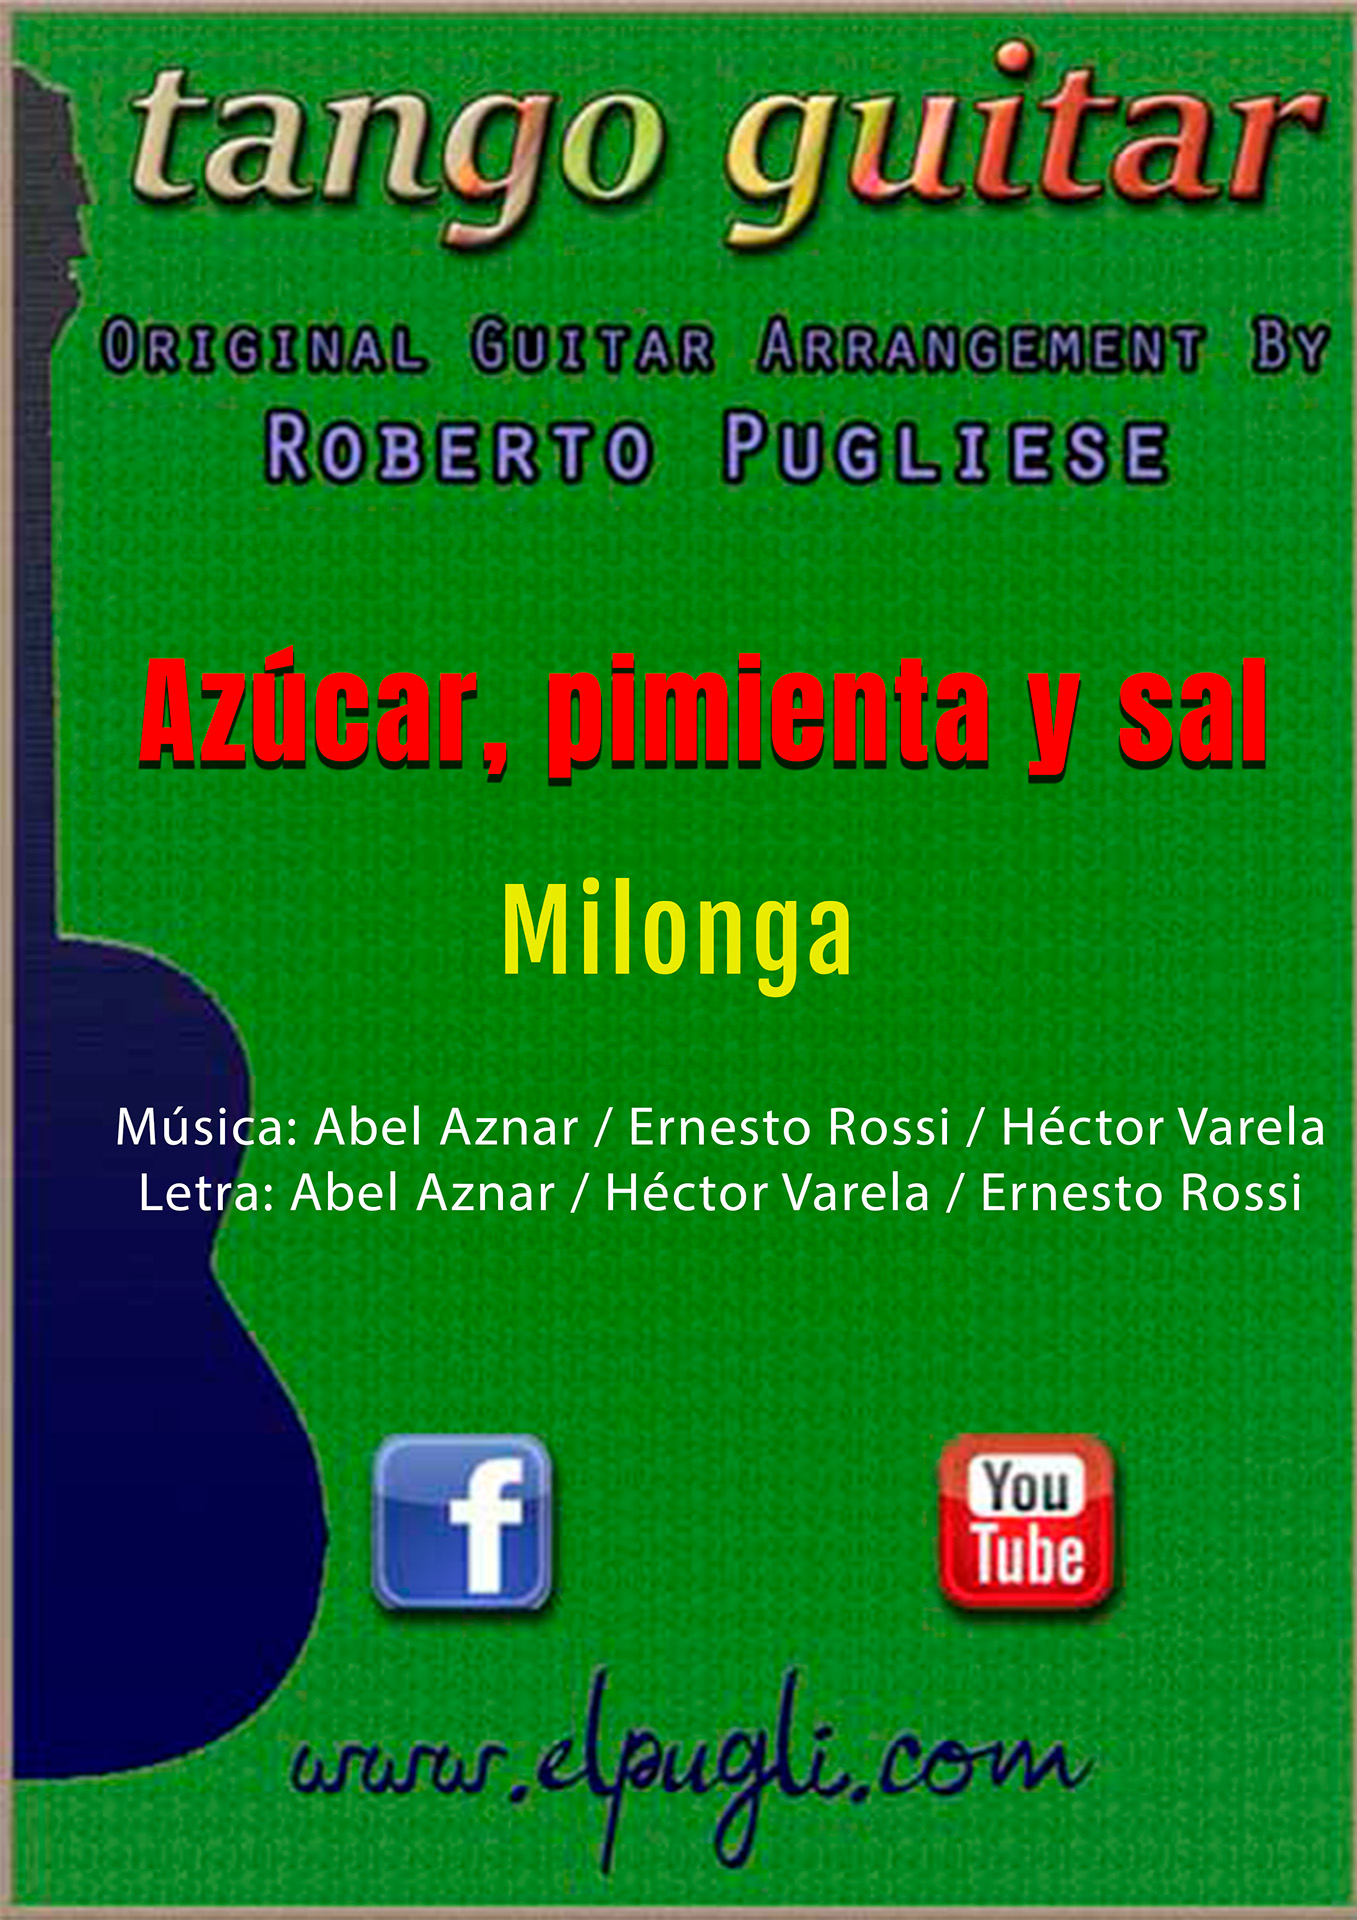 Azucar, pimienta y sal 🎼 milonga partitura de guitarra. Mp3 free & Tabs